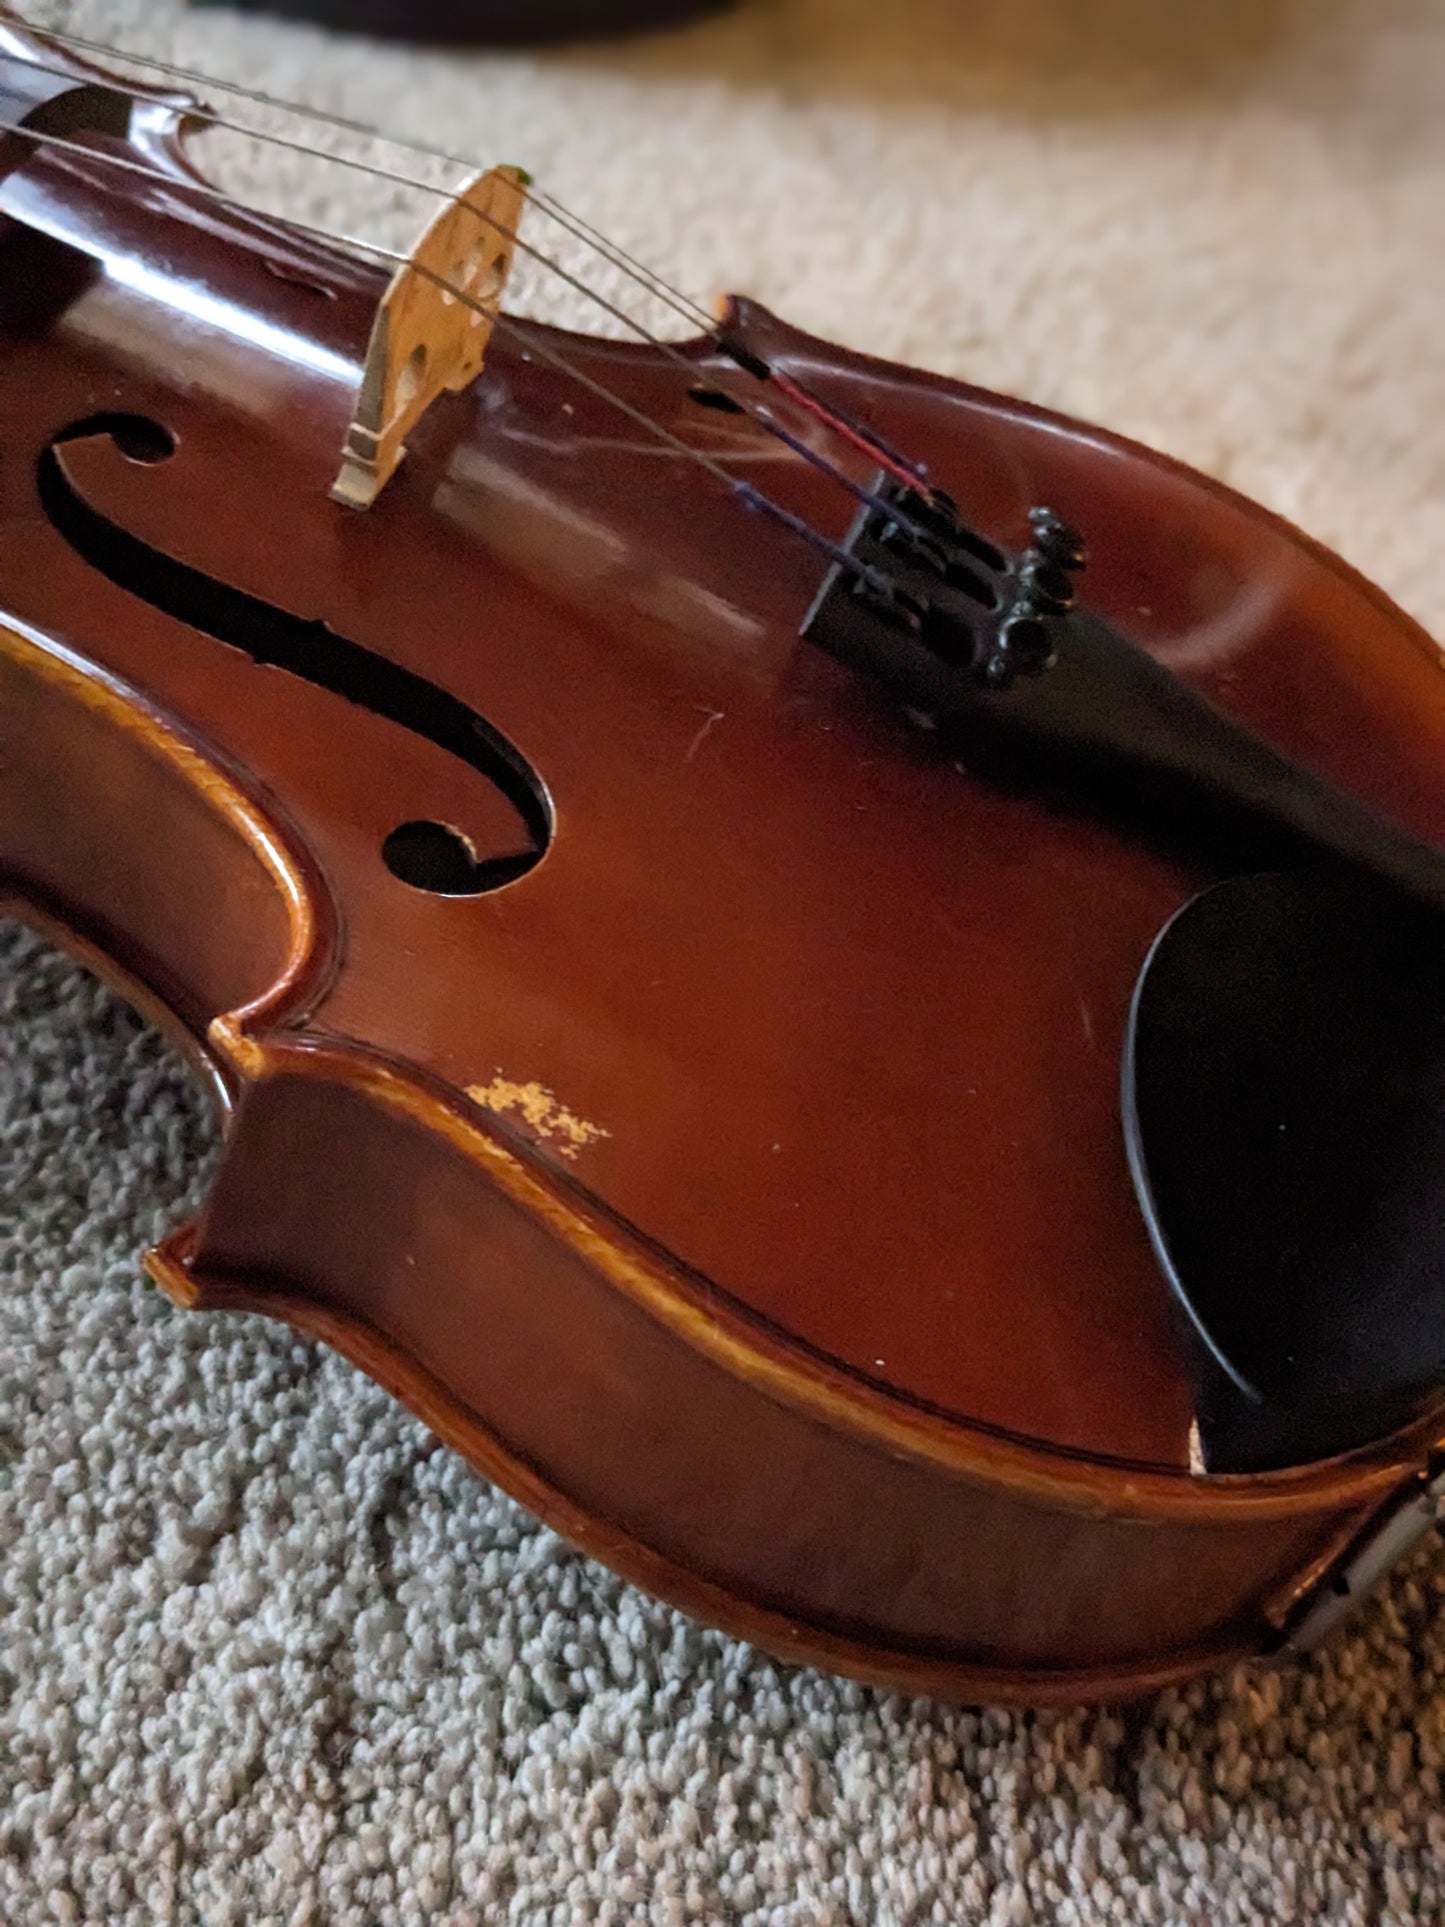 Yamaha V7G 3/4 size Acoustic Violin 2000s - Natural